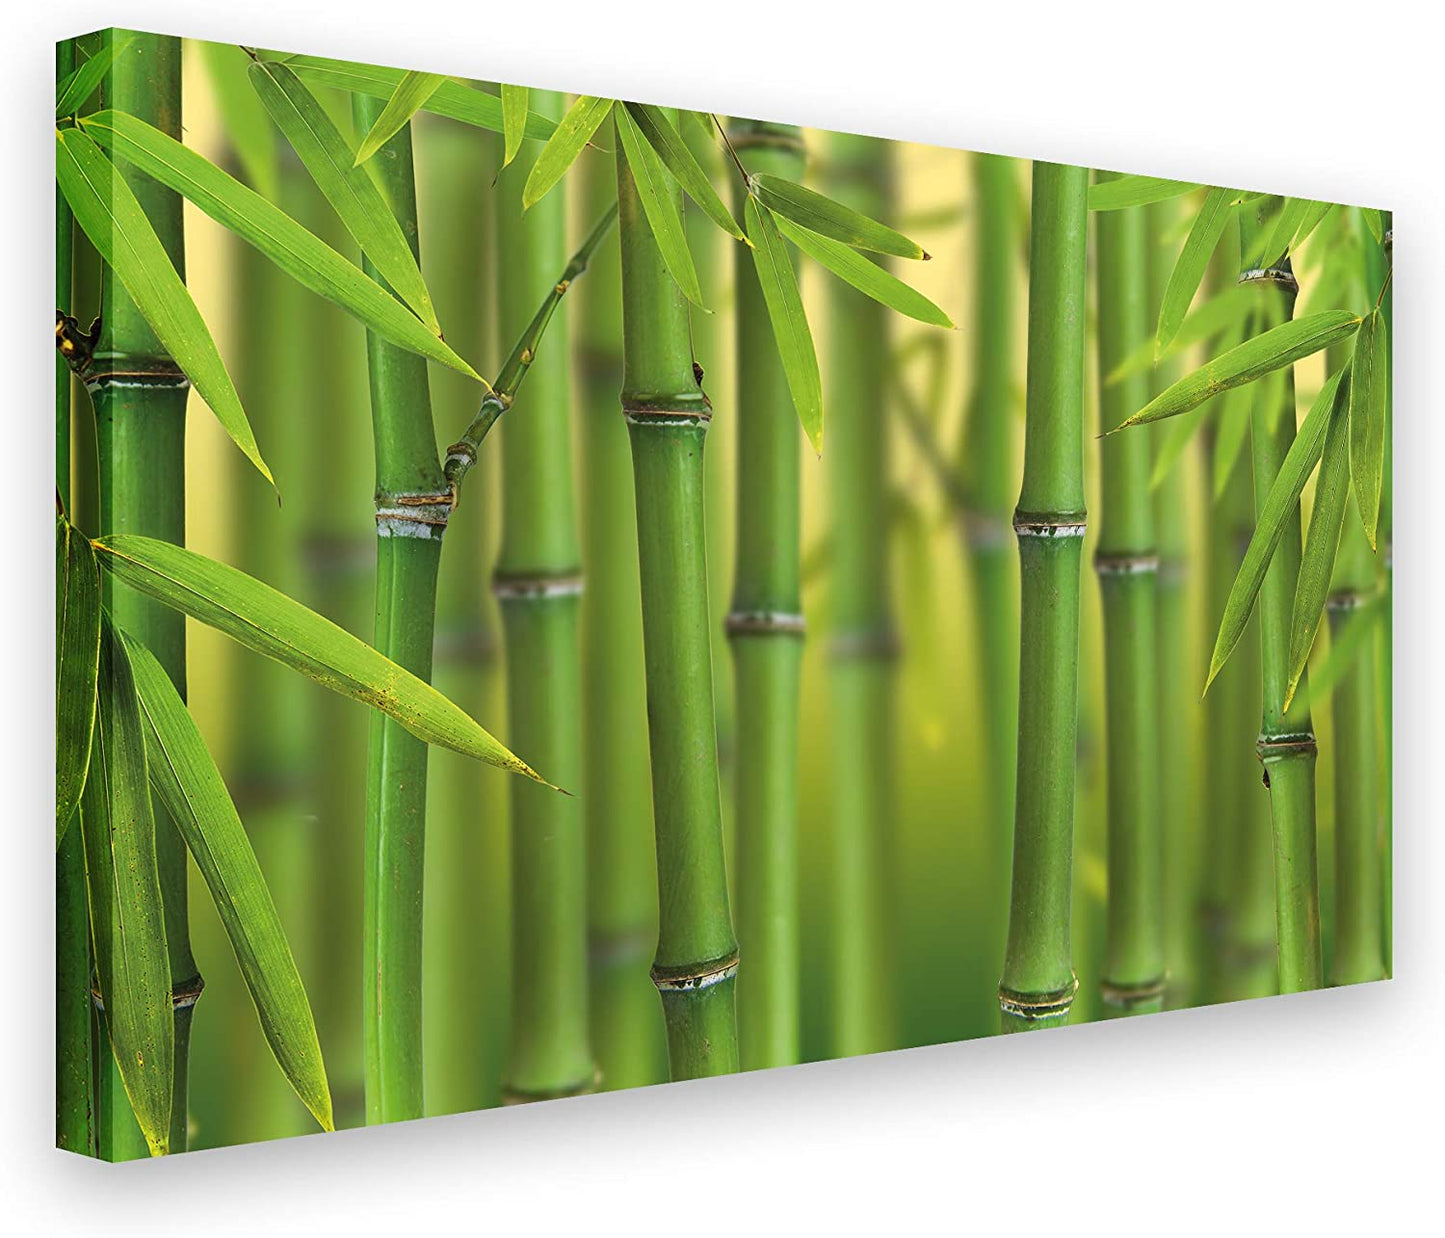 PICSonPAPER Leinwandbild Bambuswald, 100 cm x 70 cm, Dekoration, Kunstdruck, Wandbild, Geschenk, Leinwand Bambus, Blätter, Wald (100 x 70 cm)